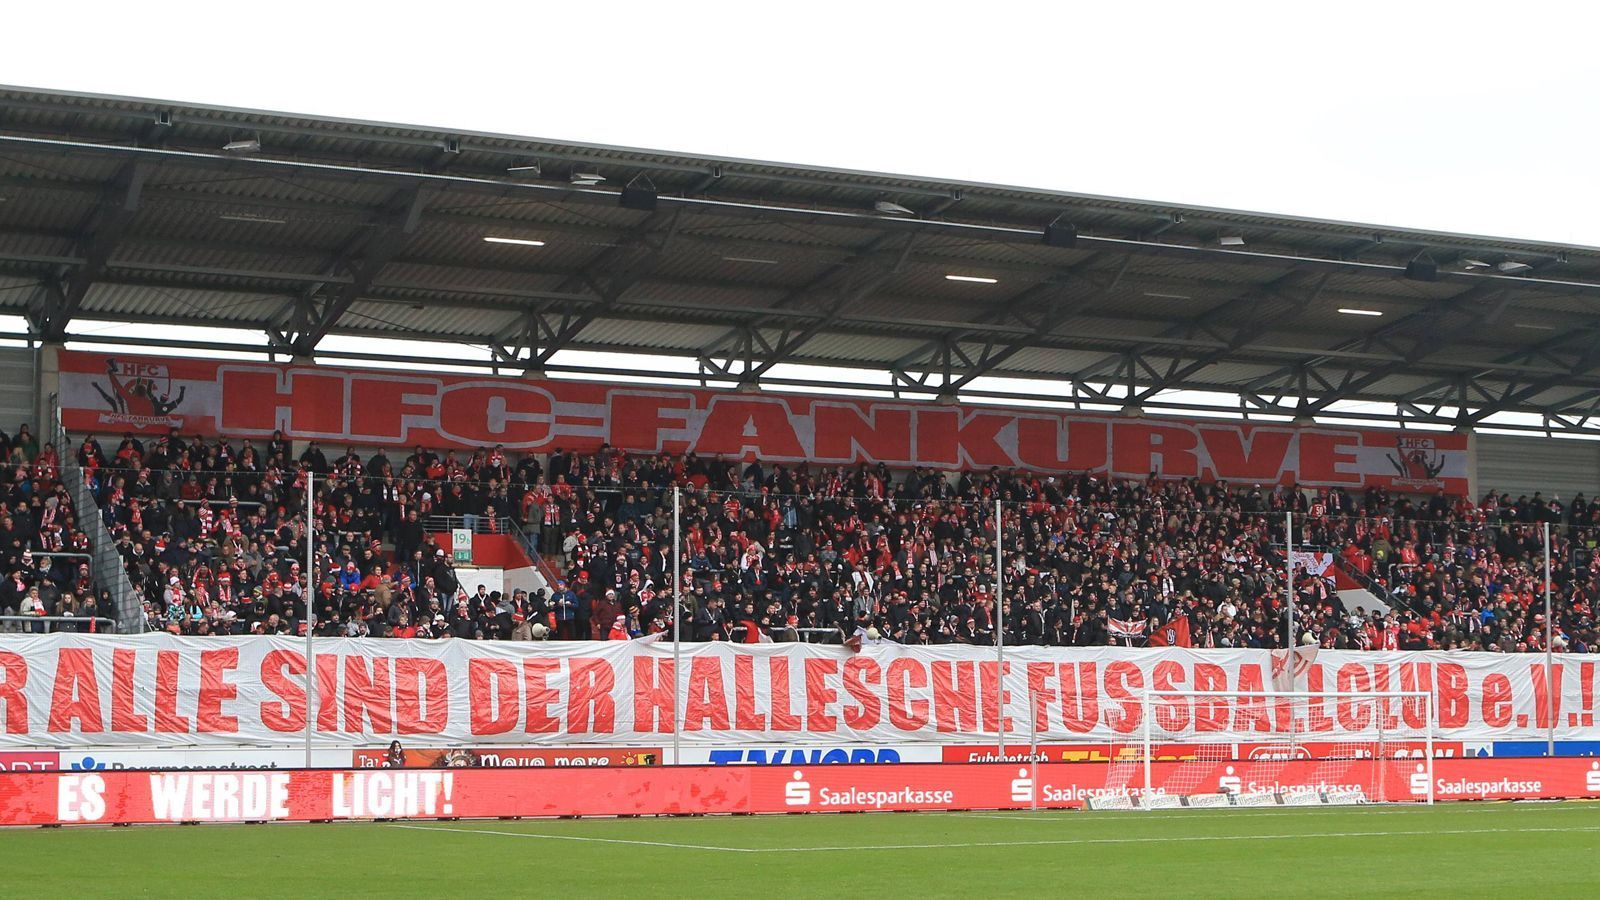 
                <strong>Platz 10: Hallescher FC</strong><br>
                Durchschnittliche Zuschauerzahl: 7286Gesamt: 65.574
              